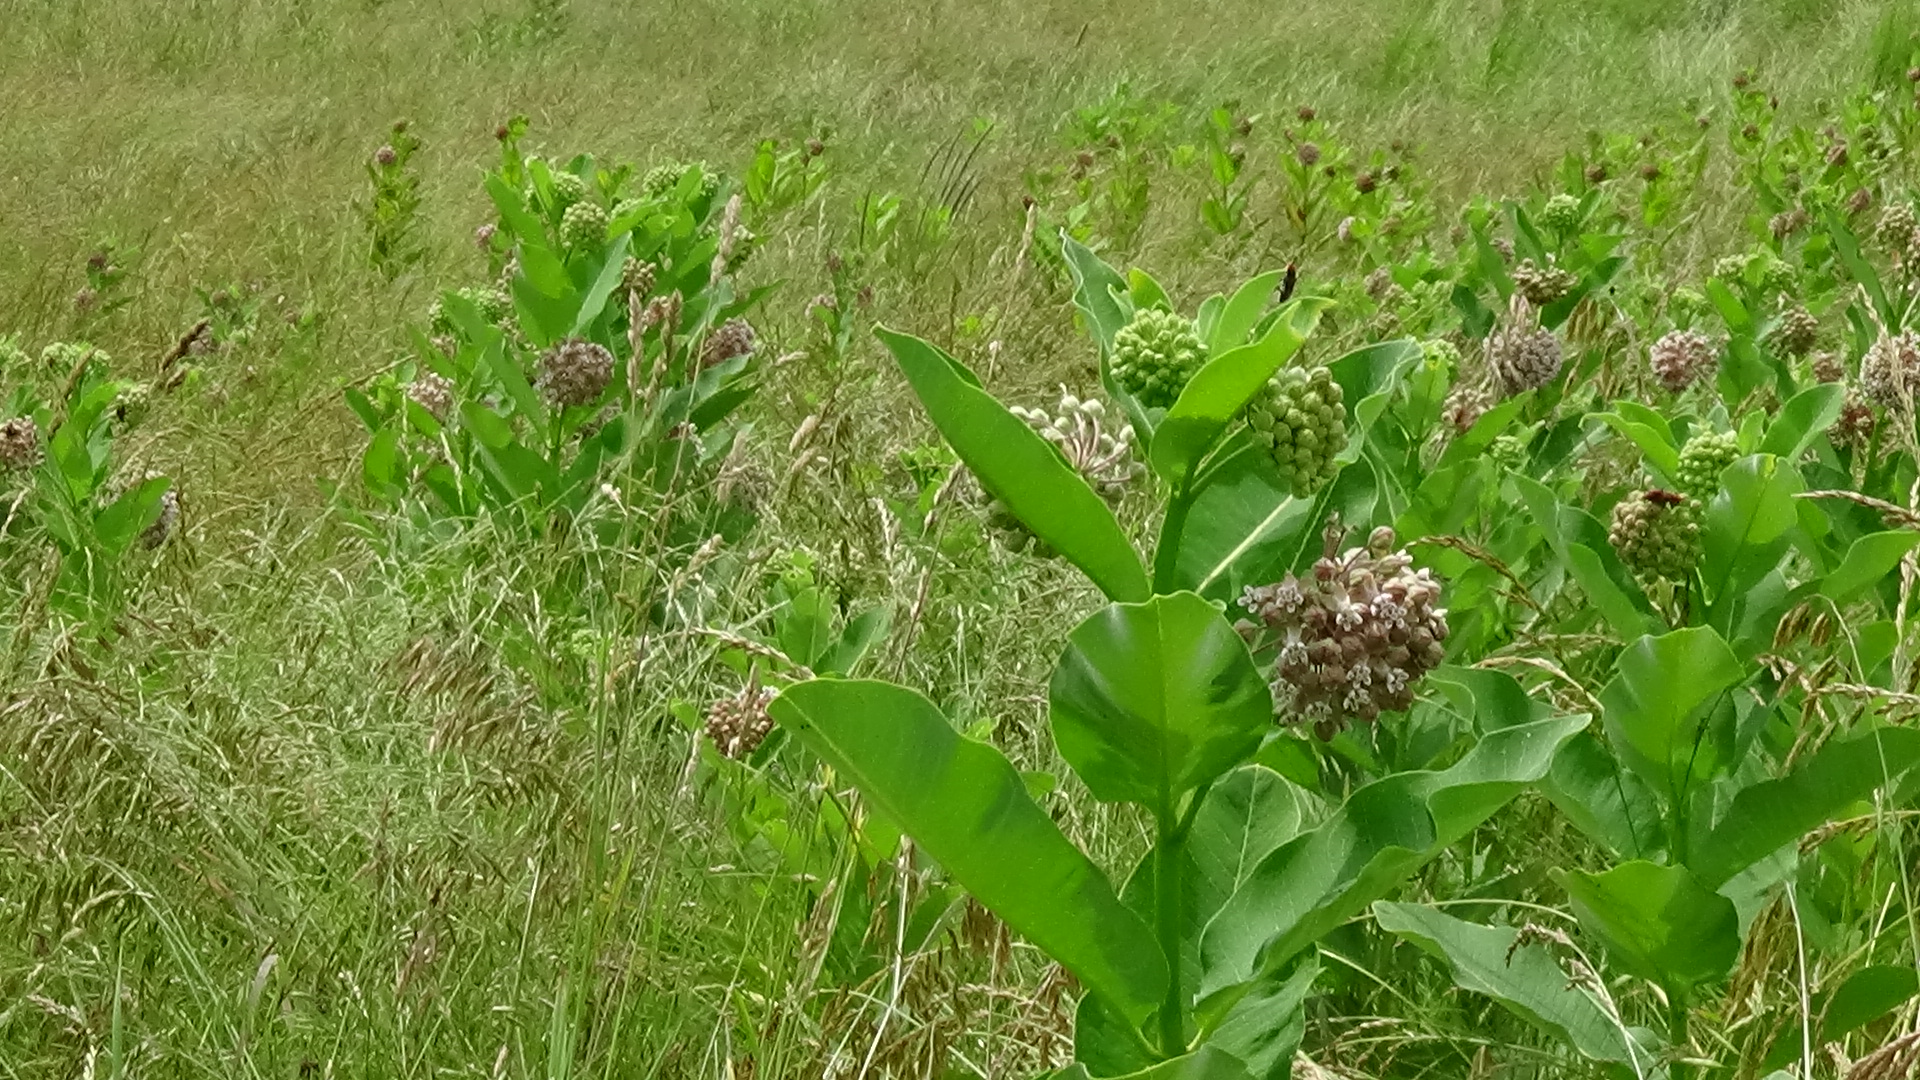 Milkweed in a field